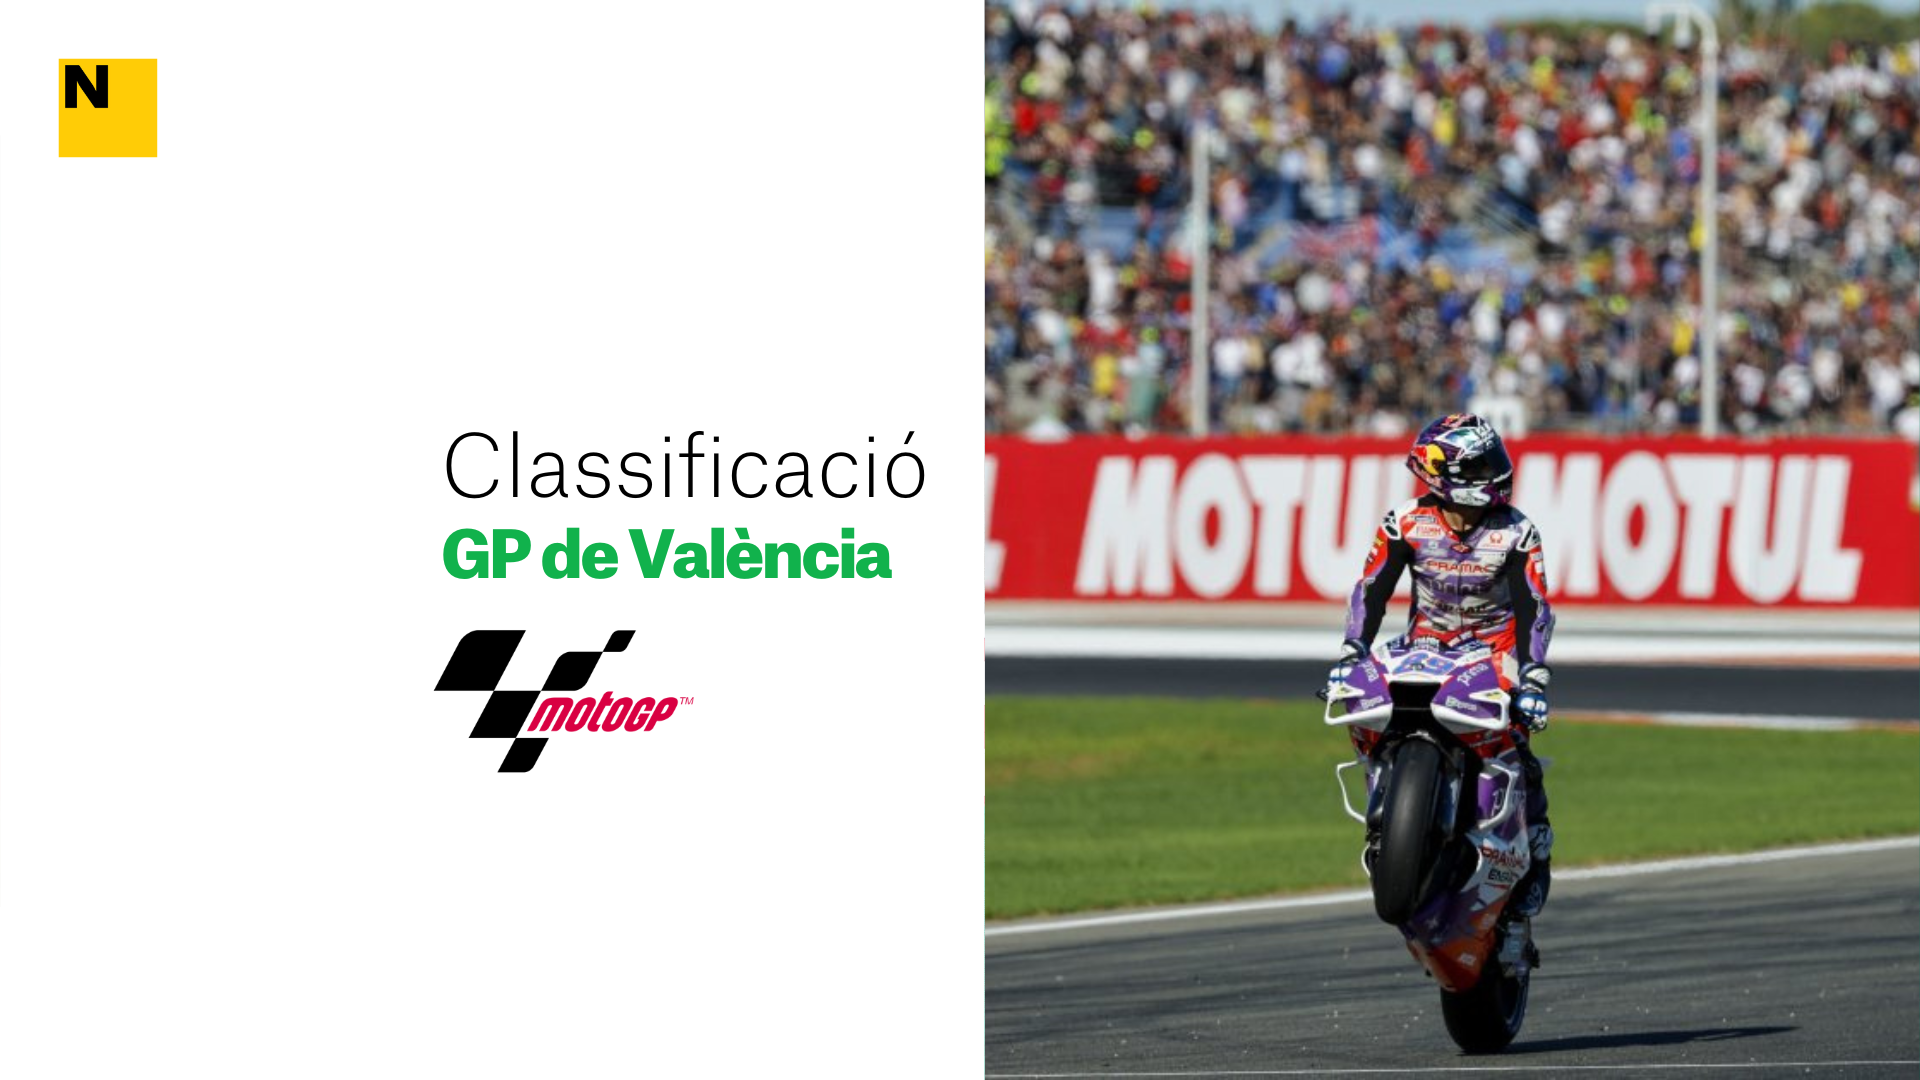 Clasificación y resultados de la carrera de MotoGP del Gran Premio de la Comunidad Valenciana 2022